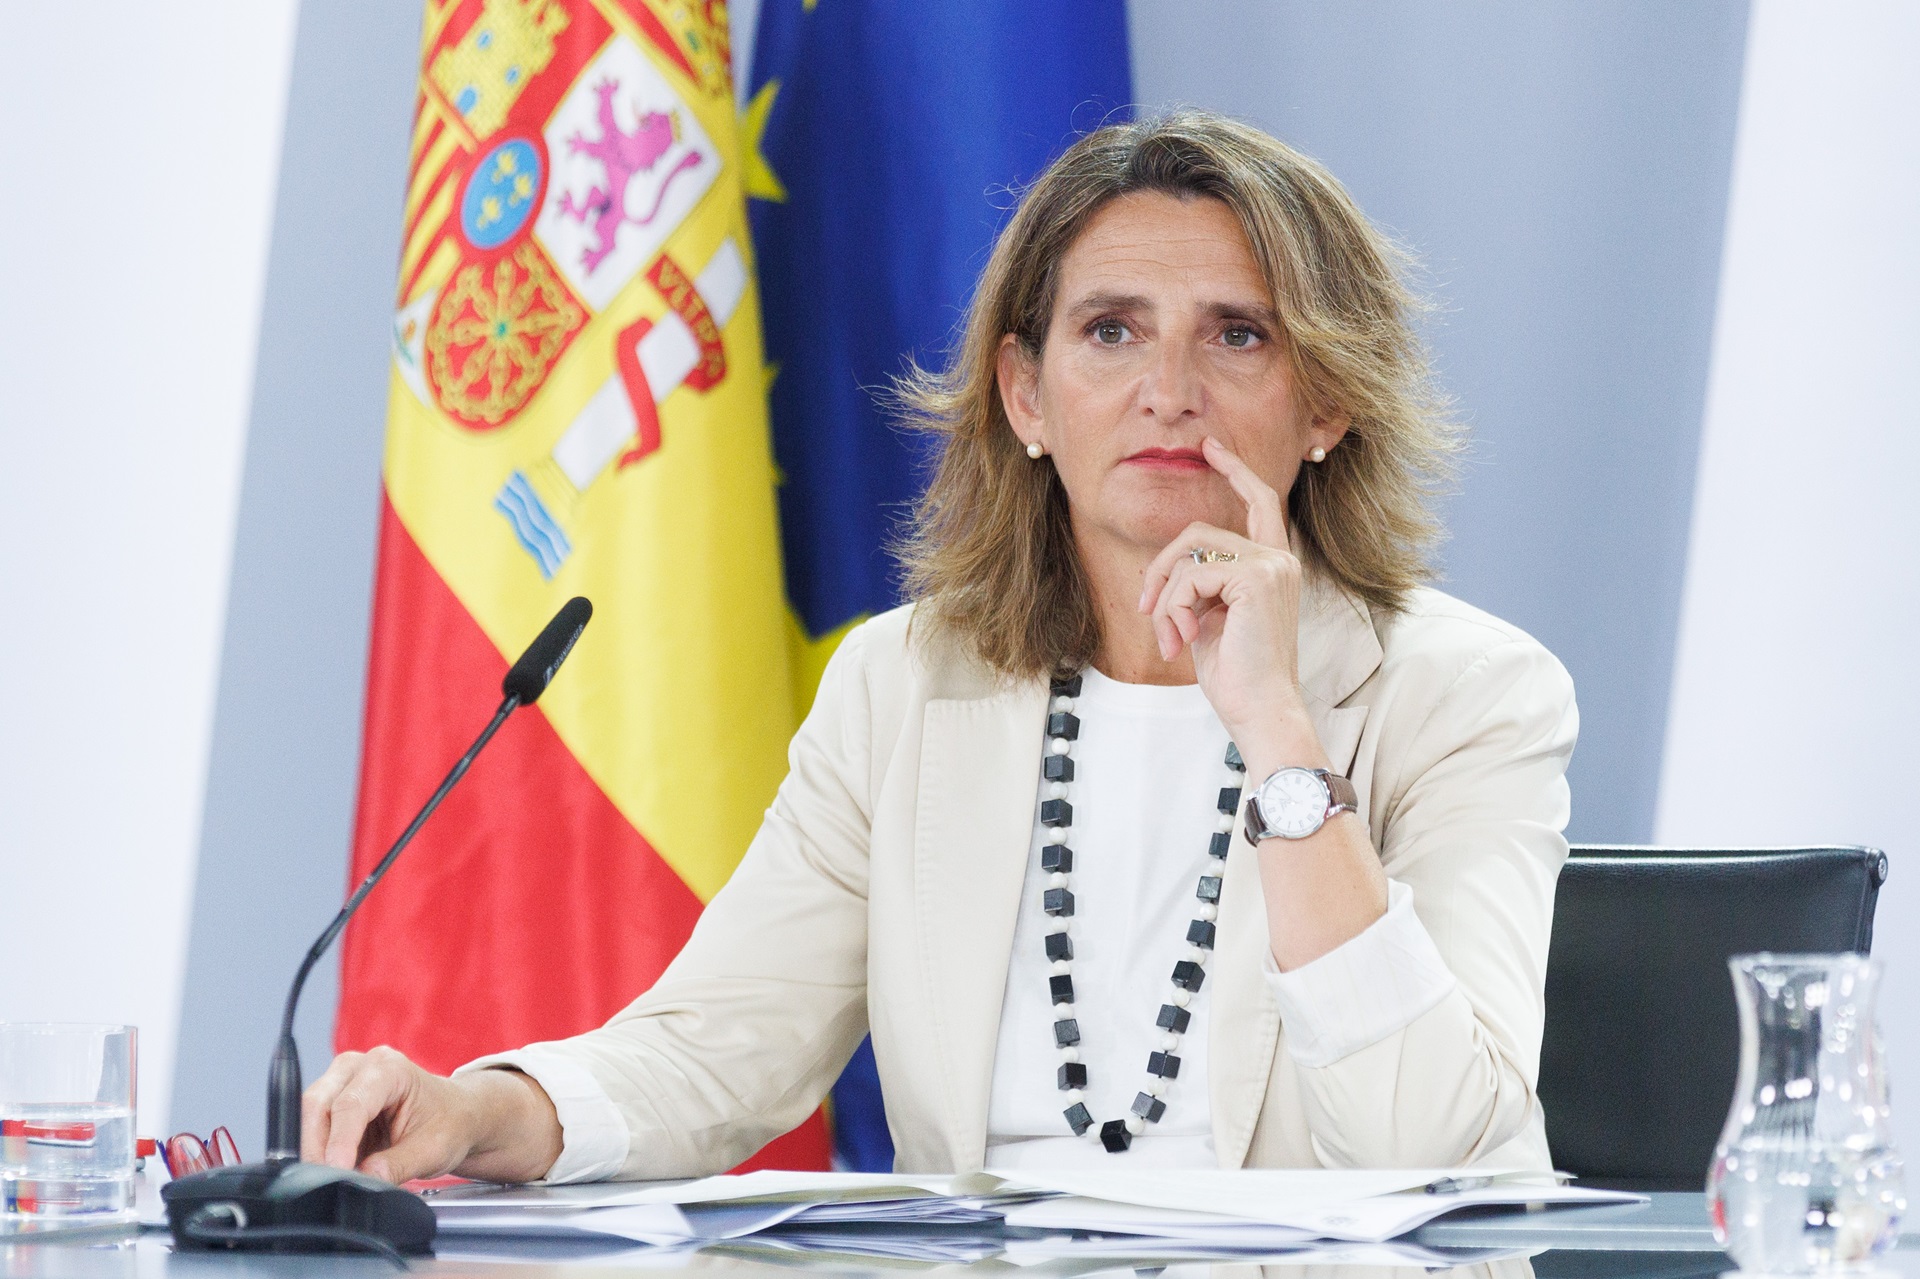 Teresa Ribera cuestiona al juez García-Castellón: "Siempre se inclina en la misma dirección"